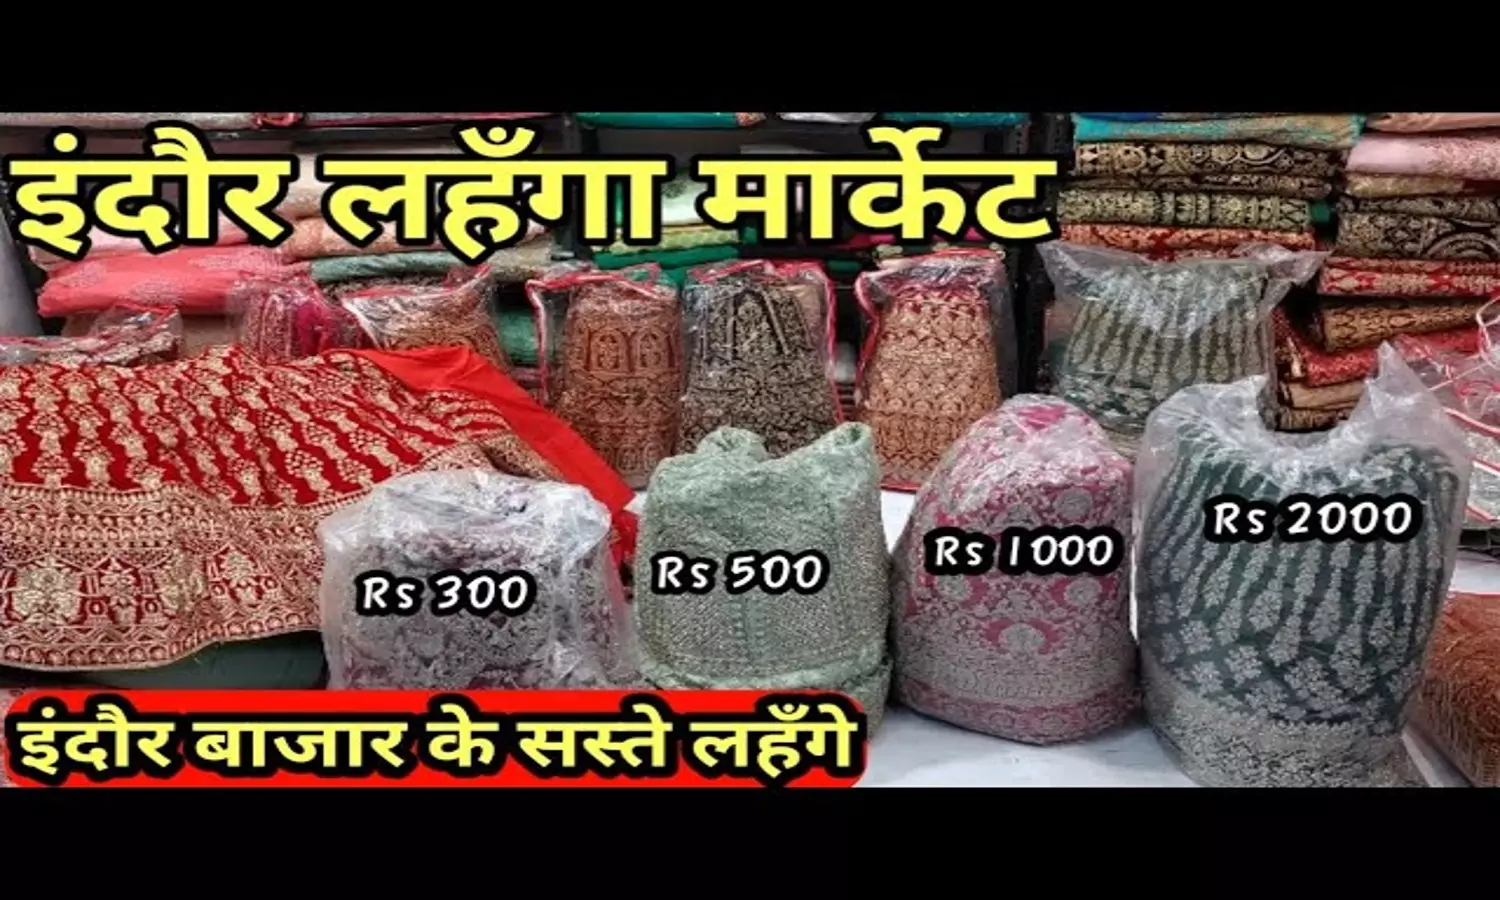 Indore Best Shop For Lehenga : शादी में चाहते हैं सेलेब्रिटी लुक, इंदौर की इस दुकान से करें लहंगे की शॉपिंग